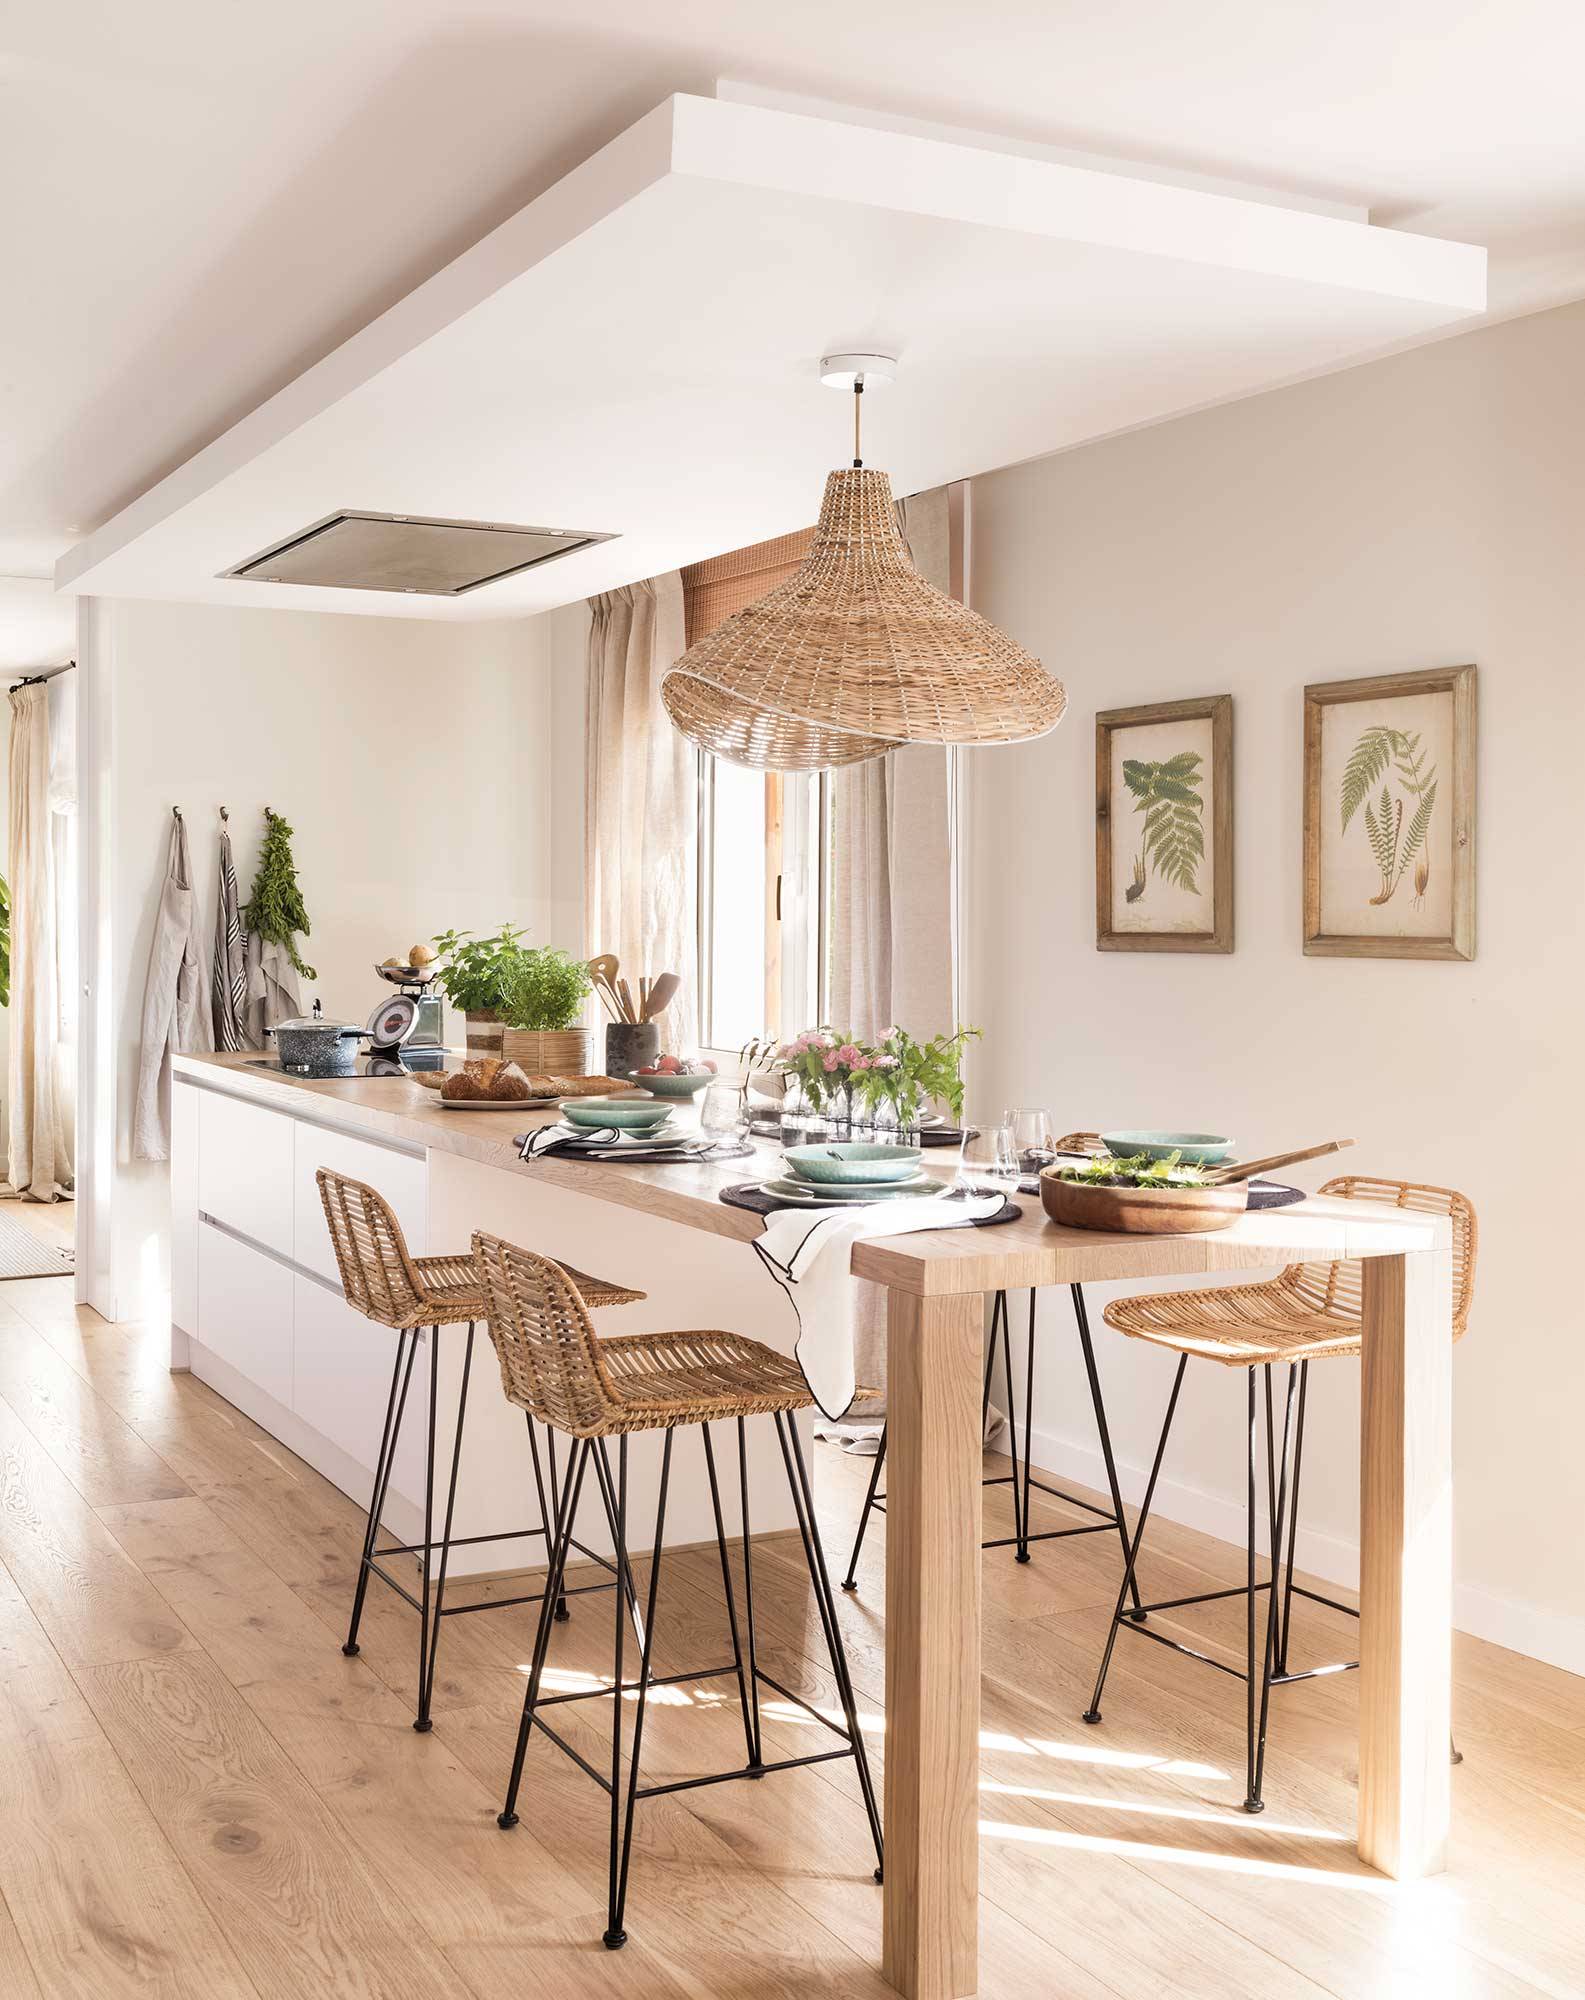 Cocina blanca moderna con isla central, mesa de comedor de madera integrada, taburetes y lámpara de fibras 00511344